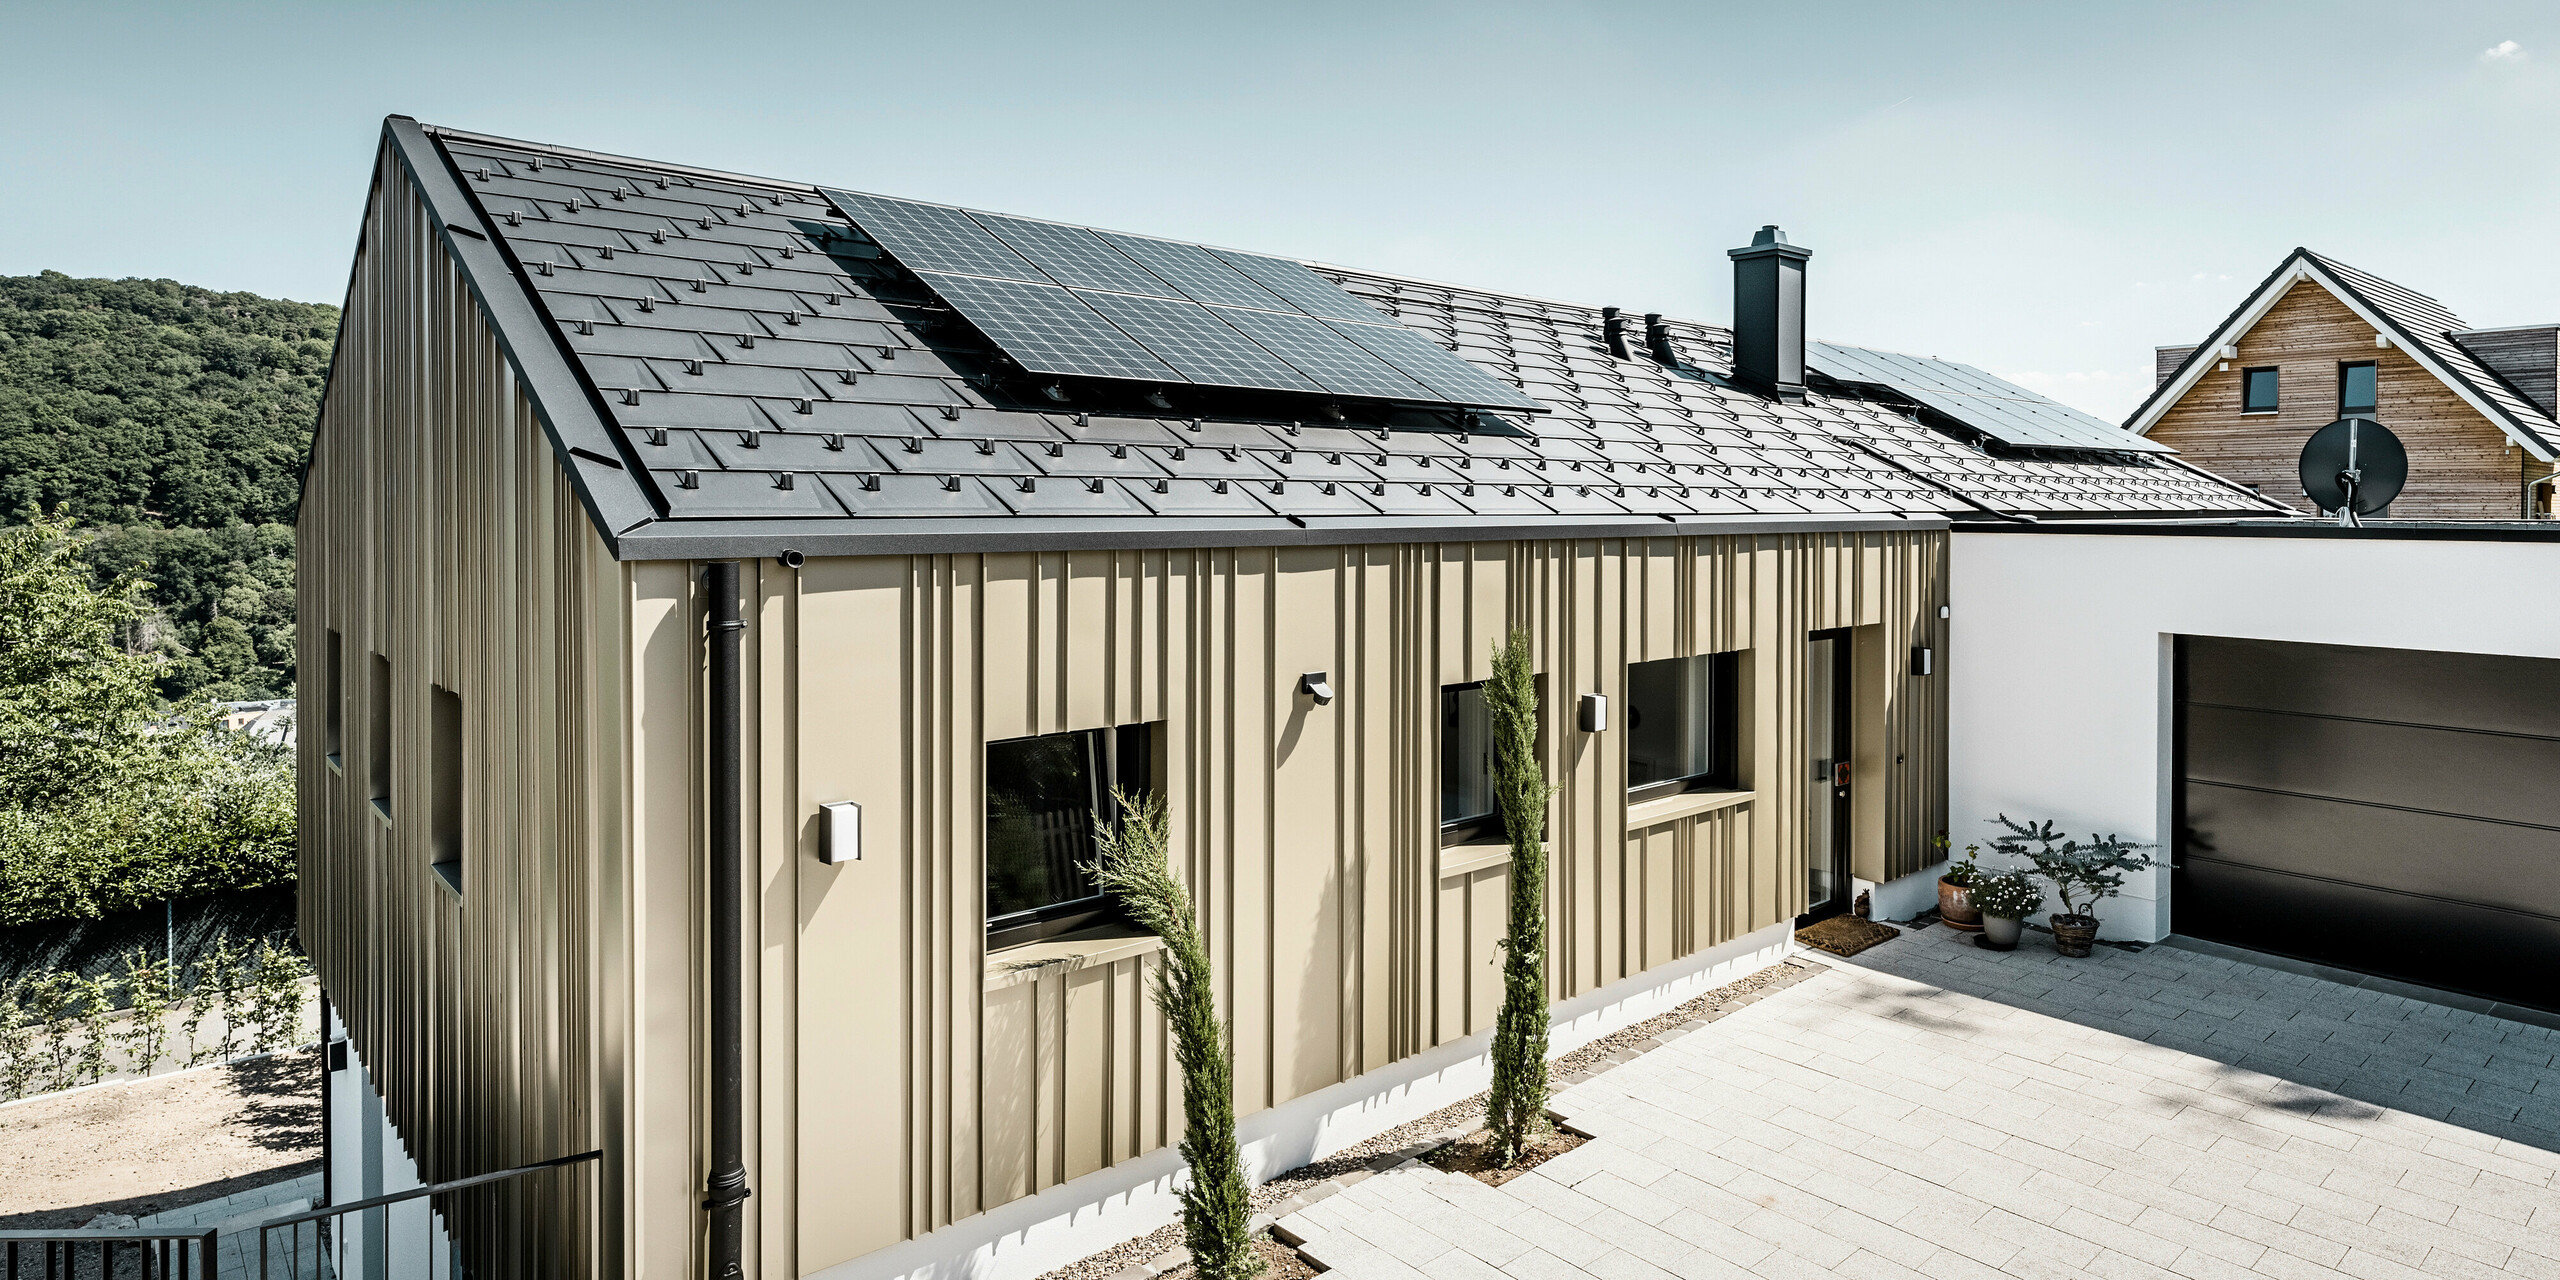 Novostavba v Bad Münstereifel byla pokryta střešním panelem PREFA R.16 v barvě P.10 antracitové. Na střeše je fotovoltaický systém. Fasáda je opláštěna hliníkovým plechem Falzonal ve světlém bronzu.